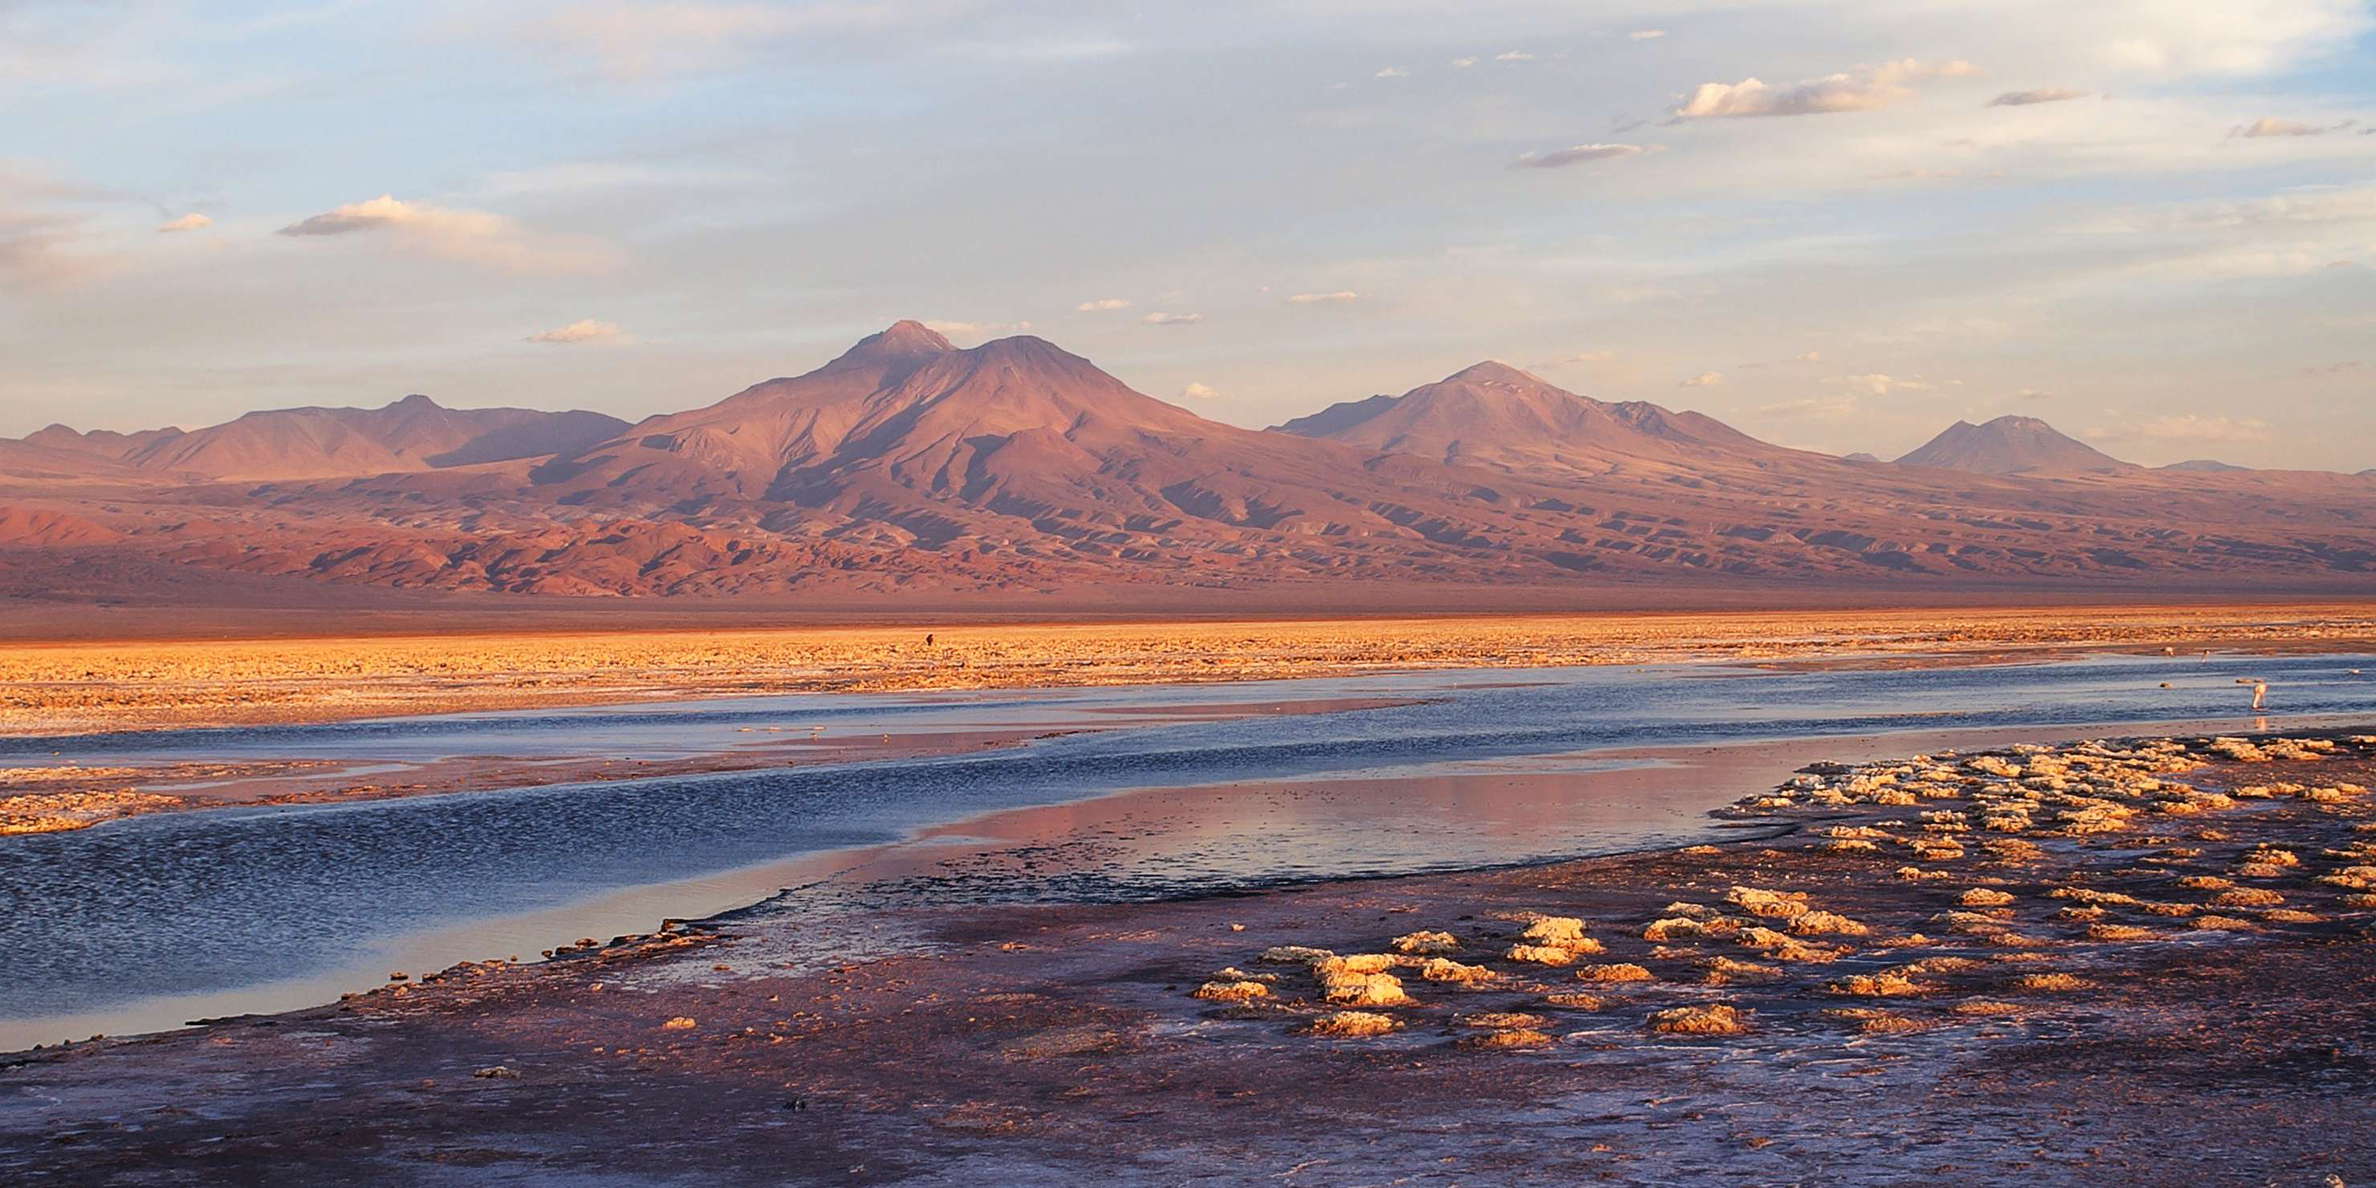 Salar de Atacama | Laguna de Chaxa at sunset